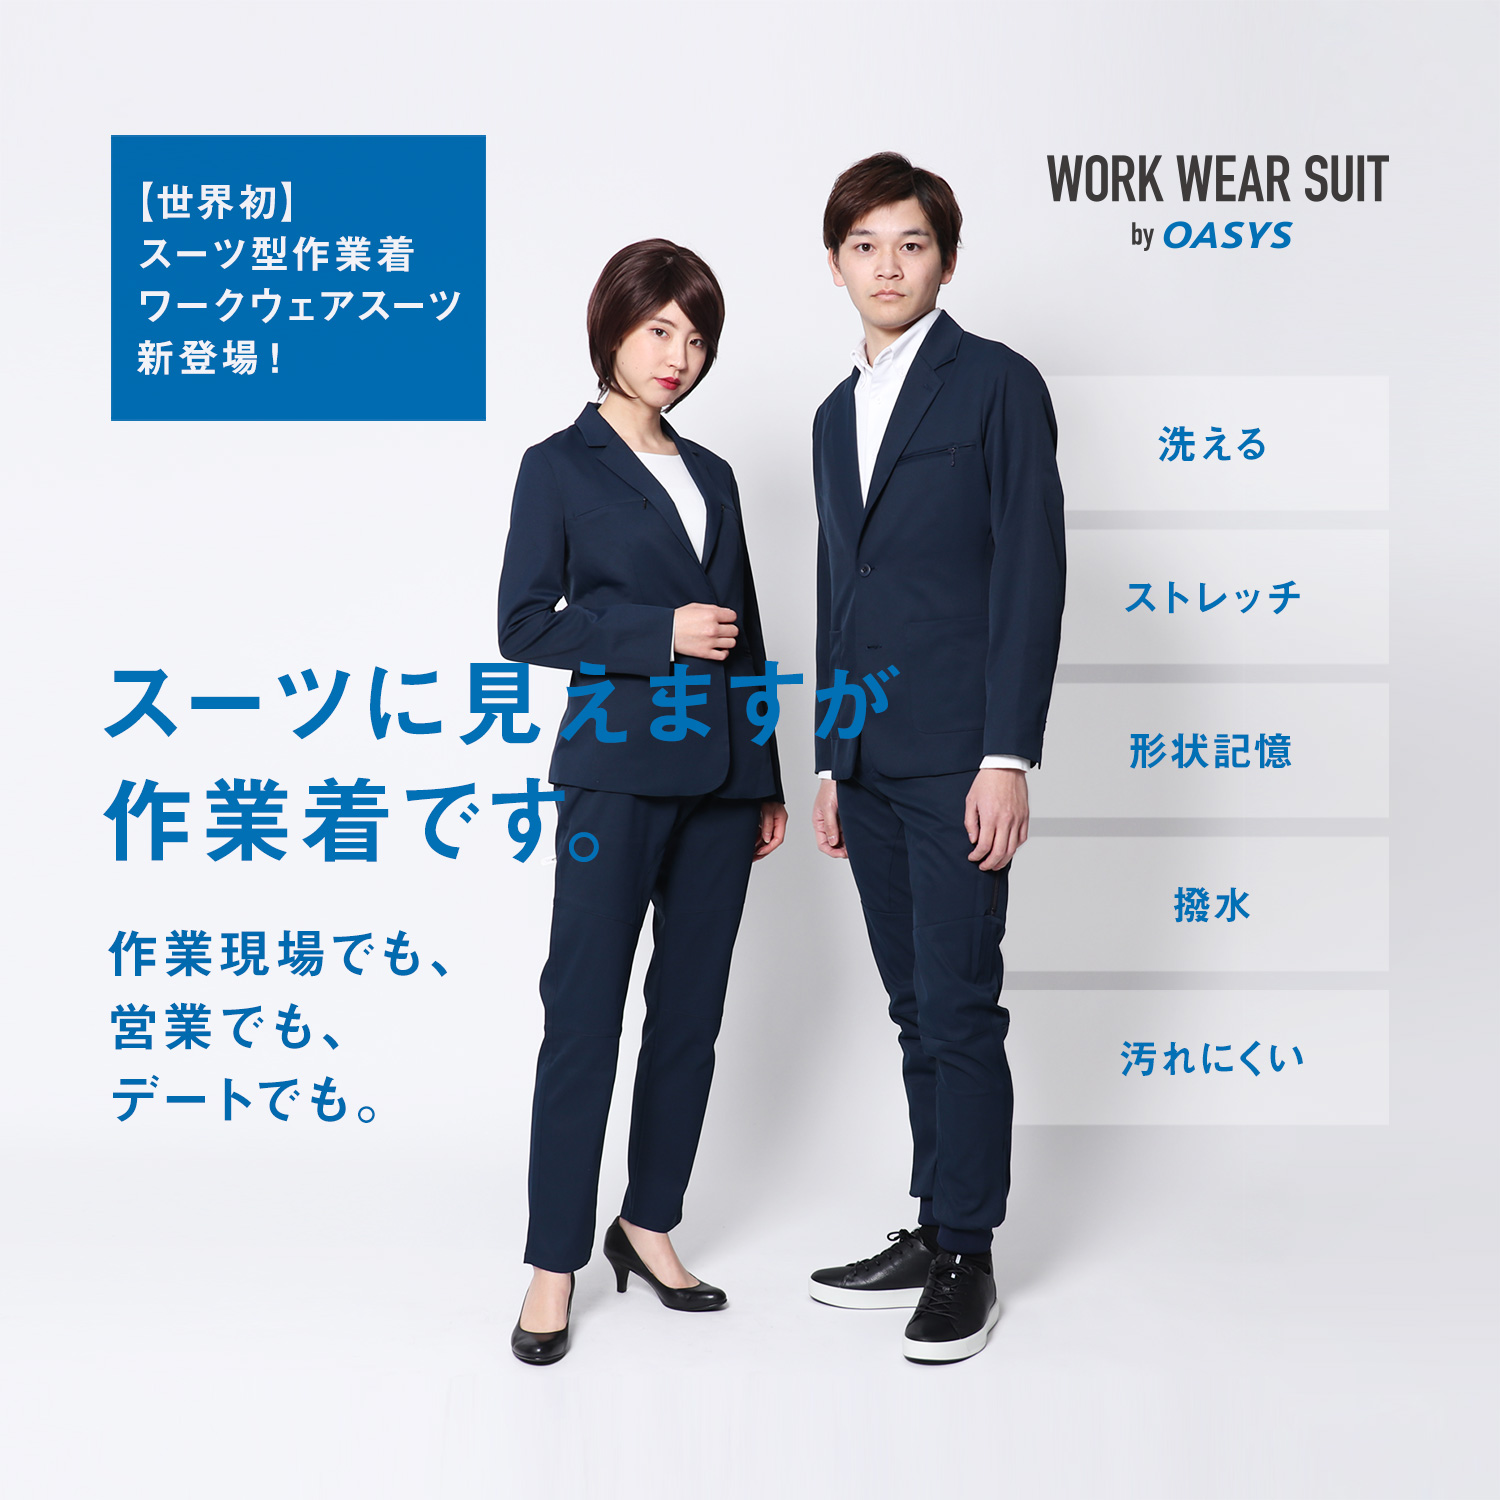 スーツに見える作業着 ワークウェアスーツ 女性用を5月7日より販売開始 株式会社オアシススタイルウェアのプレスリリース